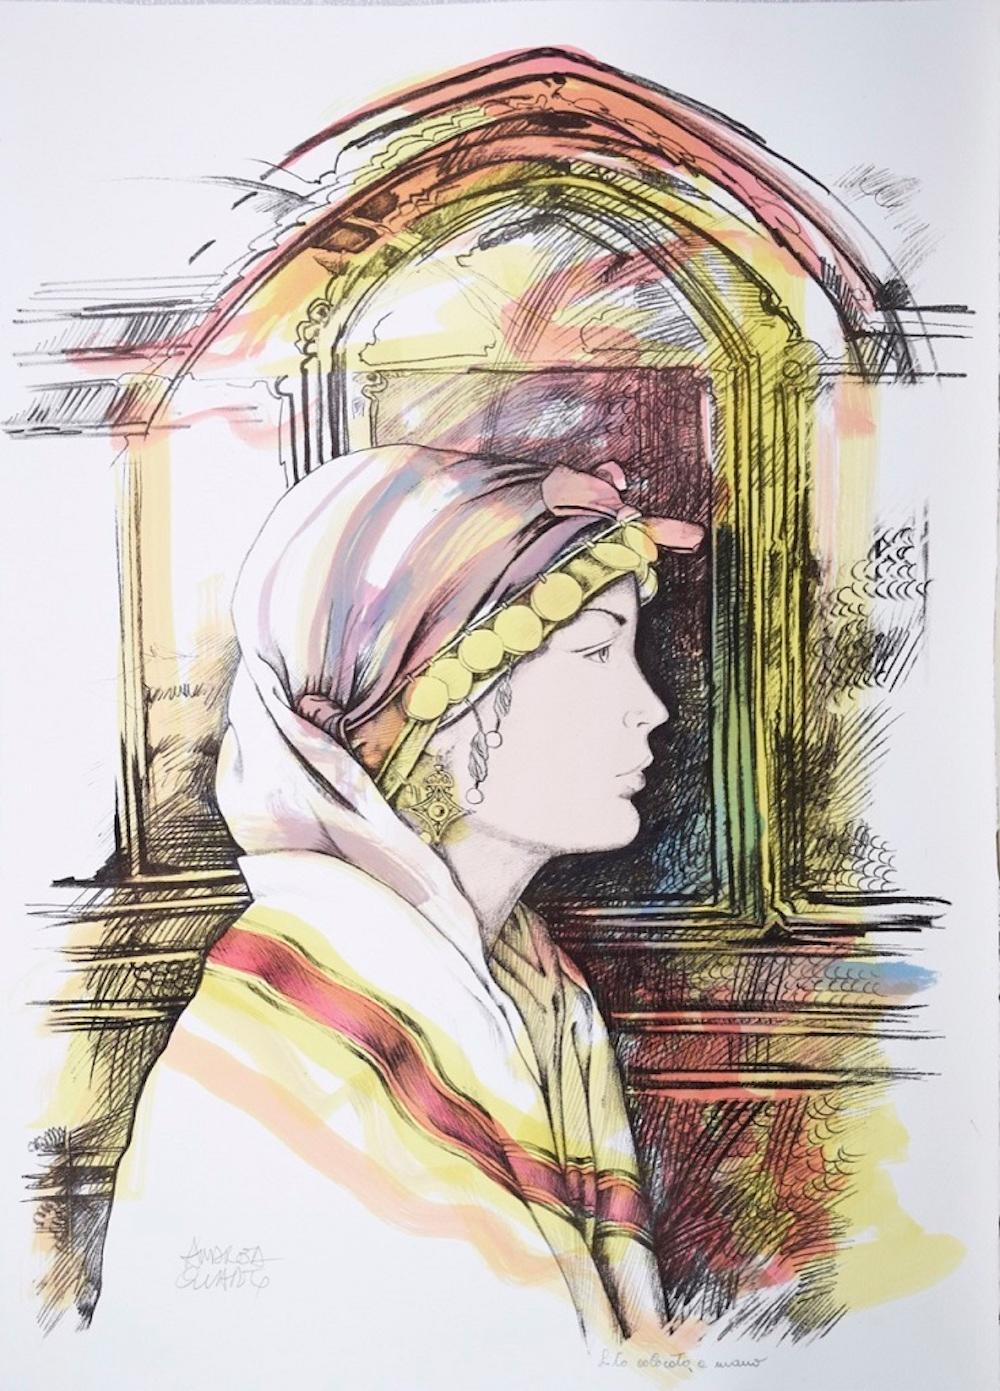 Andrea Quarto Figurative Print - Oriental Woman's Profile - Original Hand-Colored Lithograph by A. Quarto - 1980s